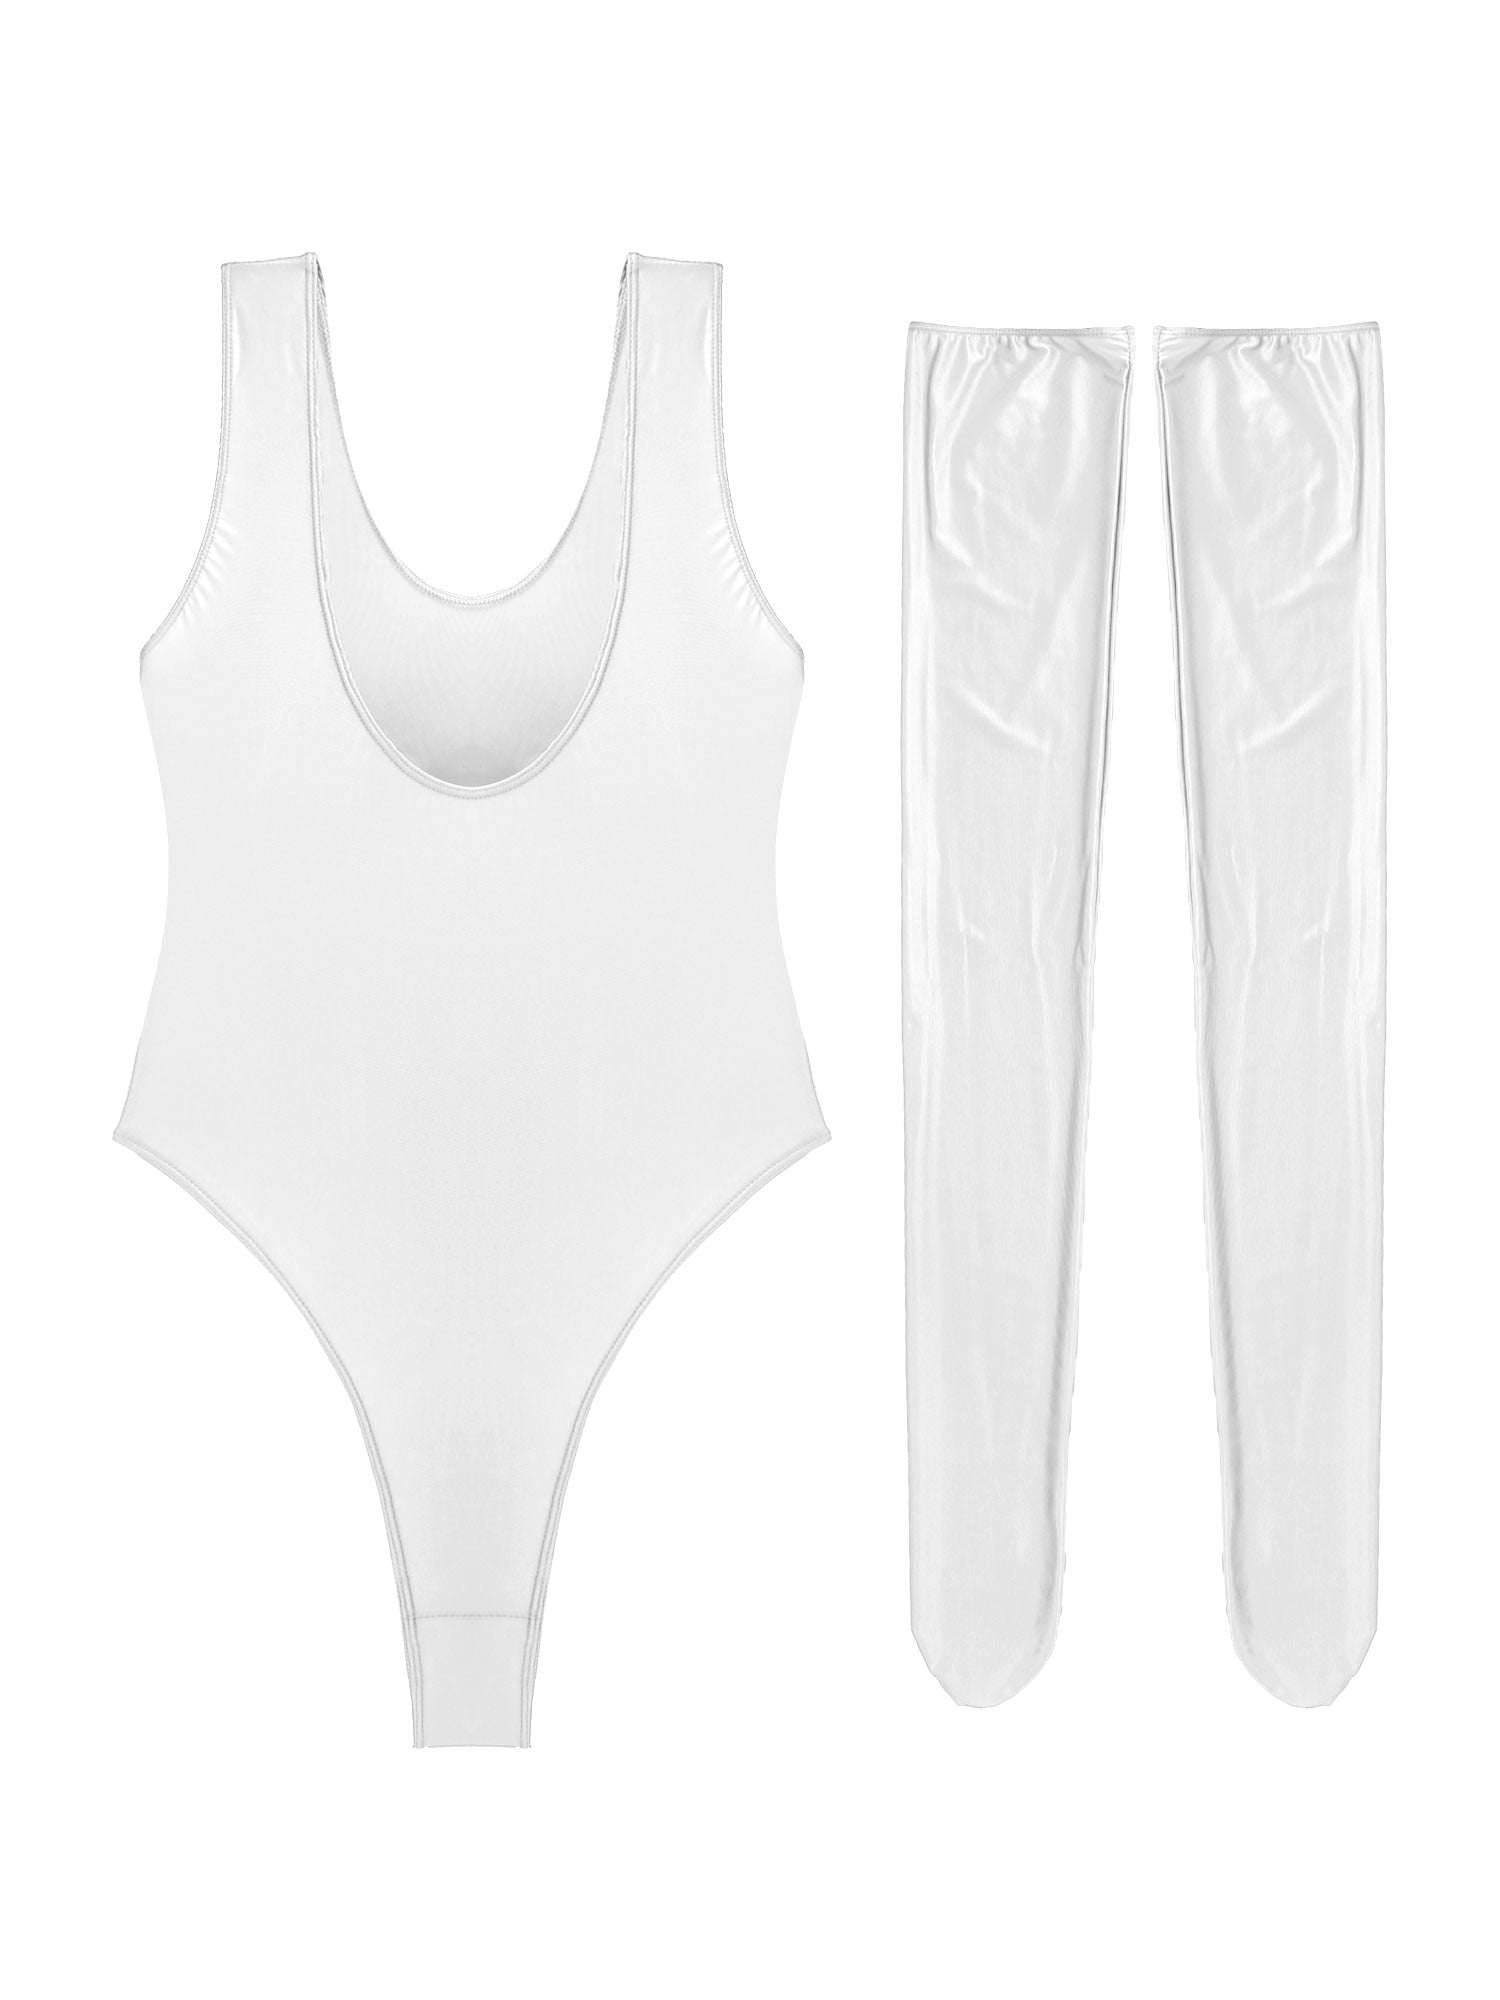 Glanzvoller Bodysuit für Damen, Stretch-Badeanzug inklusive Strümpfe, Körperbetonter Einteiler mit O-Ausschnitt und hohem Beinausschnitt - undergroundtechnostore.de